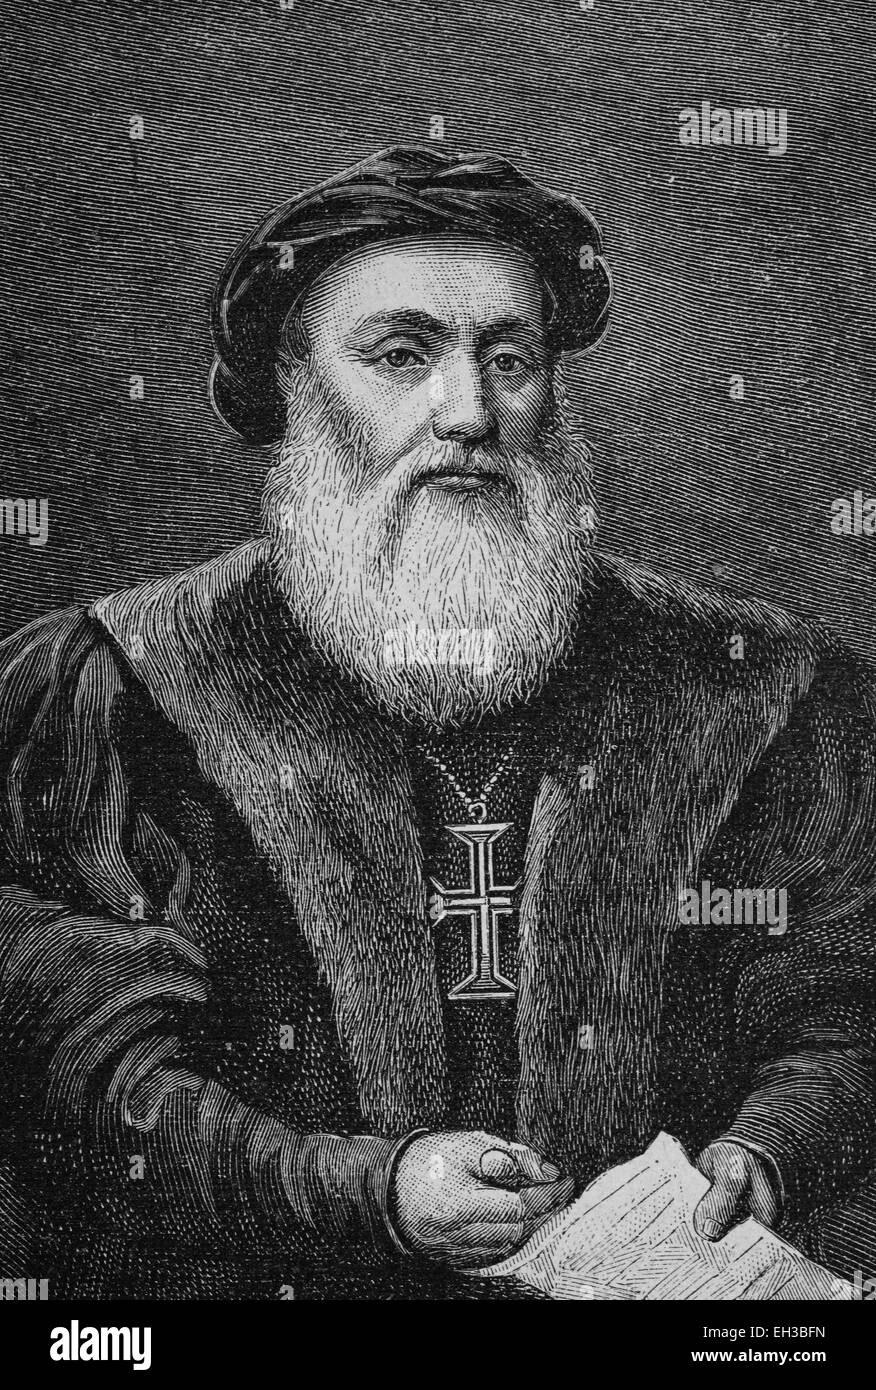 Dom Vasco da Gama, Graf de Vidigueira (1469 - 1524) était un navigateur et explorateur portugais de la route des Indes. Banque D'Images